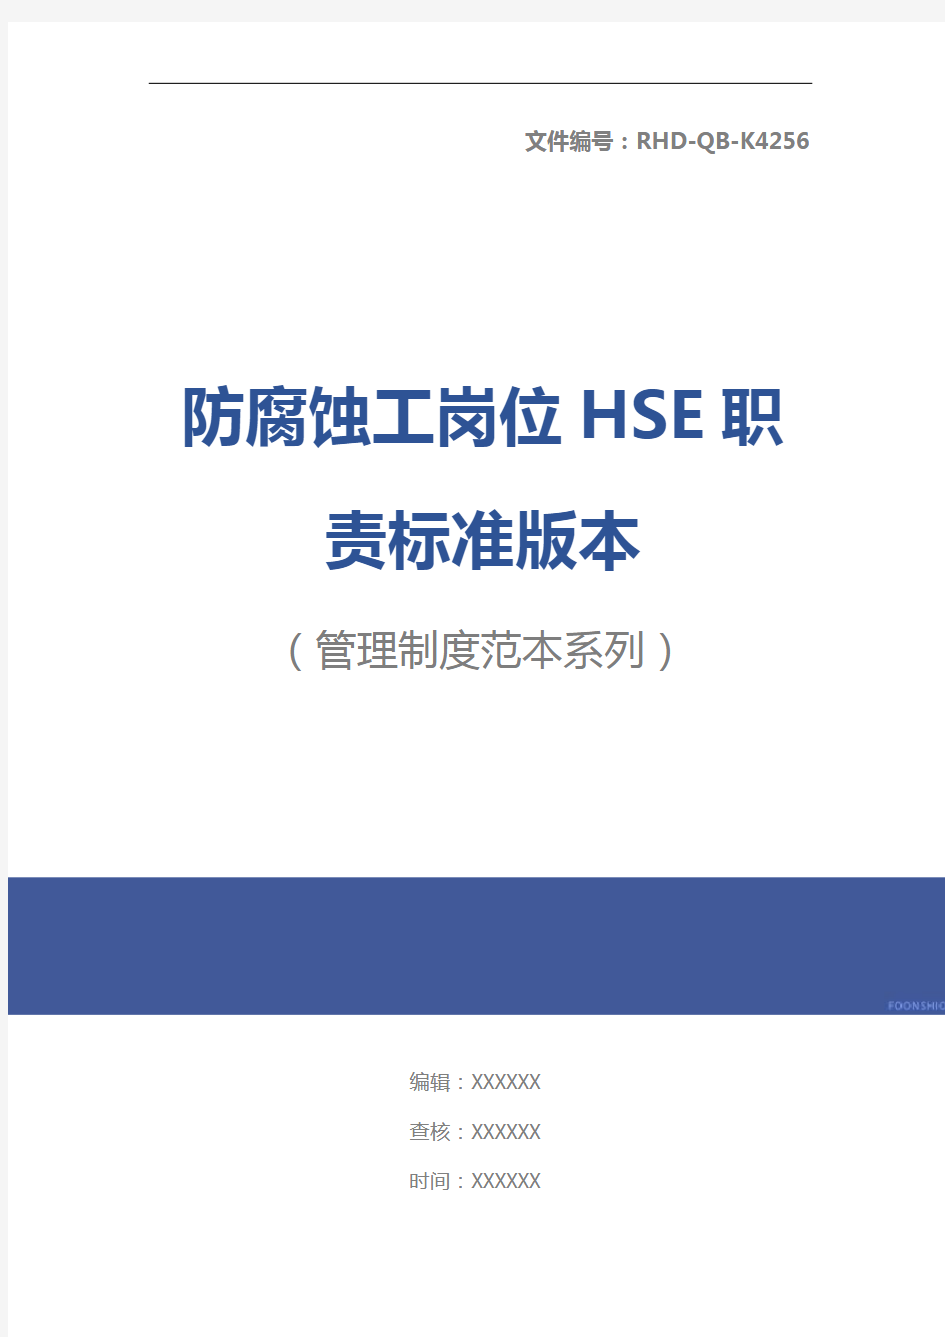 防腐蚀工岗位HSE职责标准版本